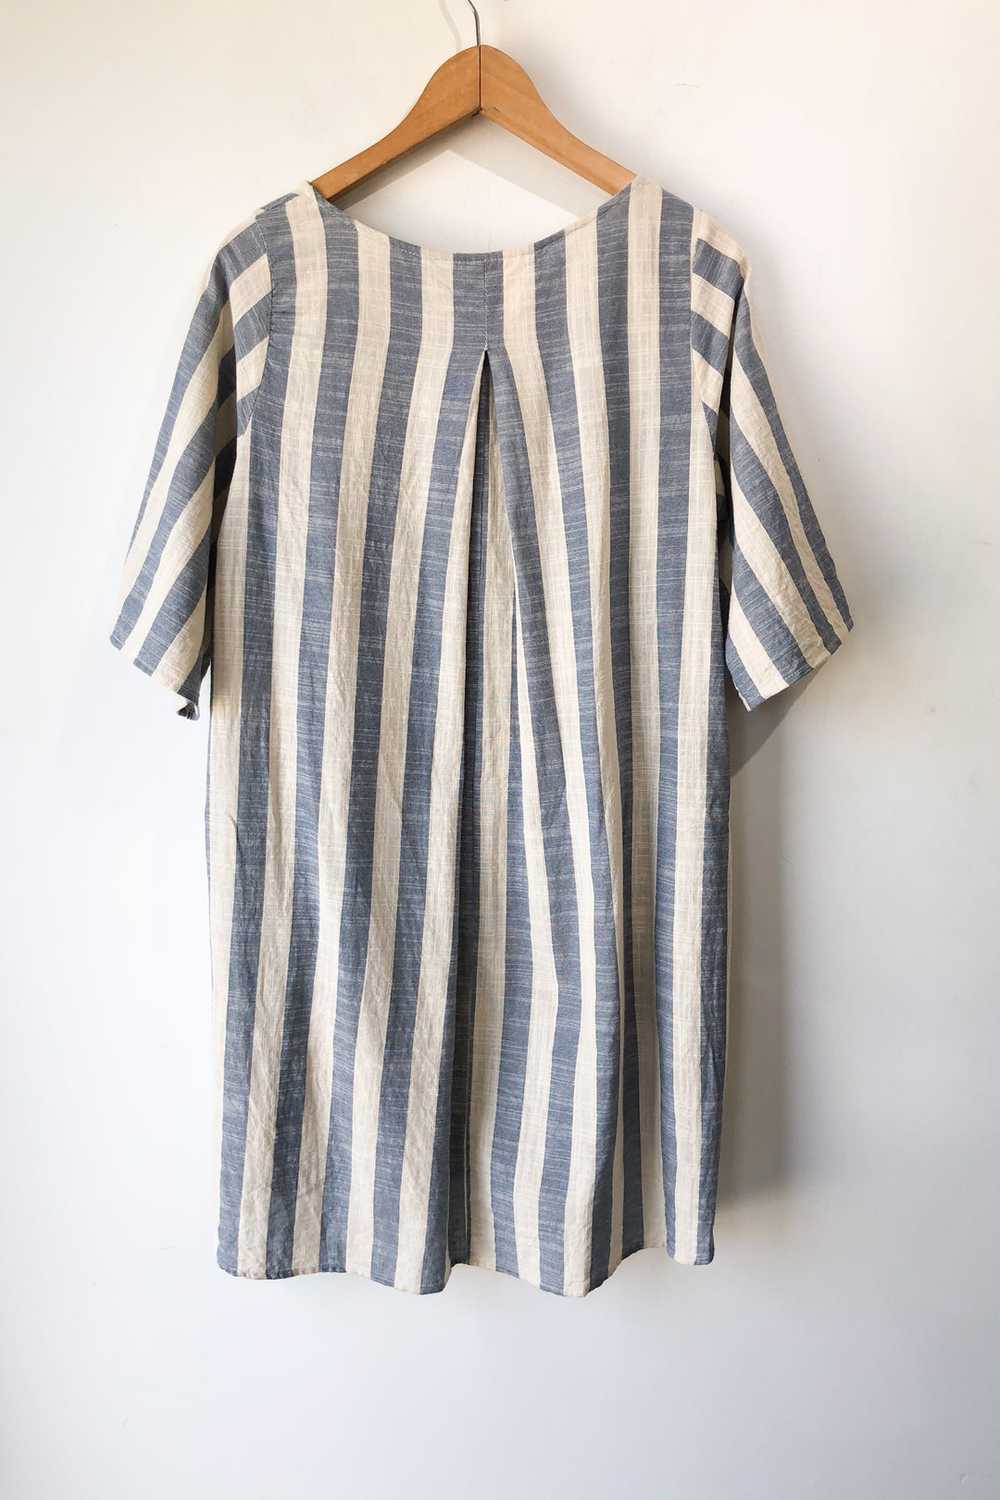 Vintage Wide Stripe Dress - image 2